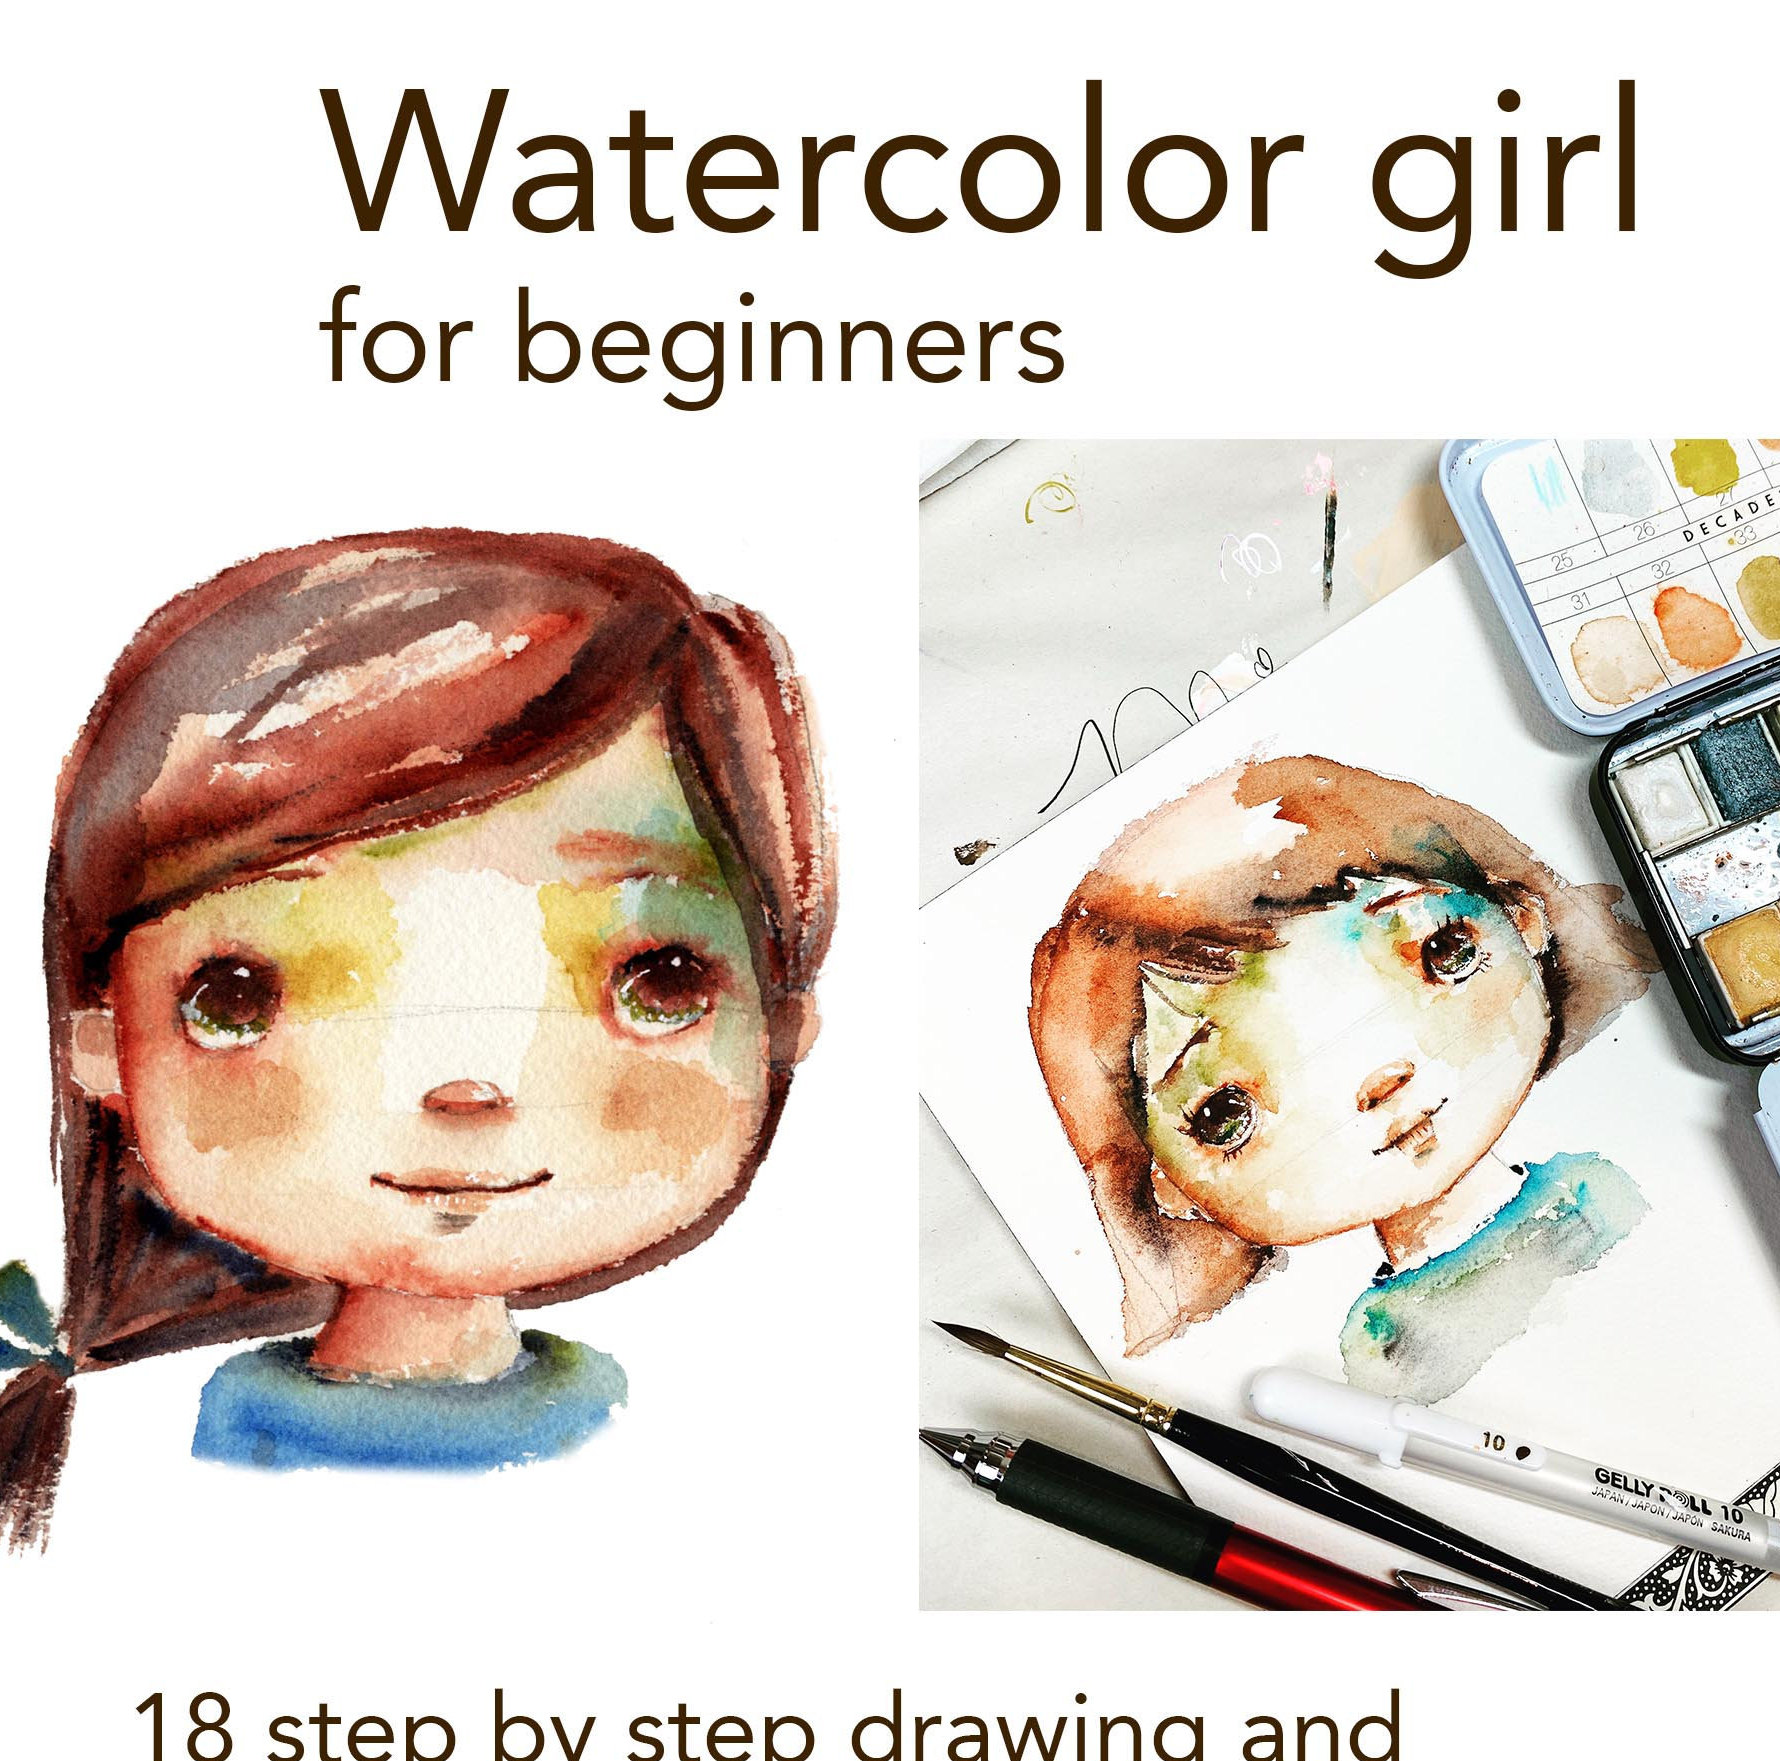 Stream #^Ebook ⚡ Watercolor Workbook: 30-Minute Beginner